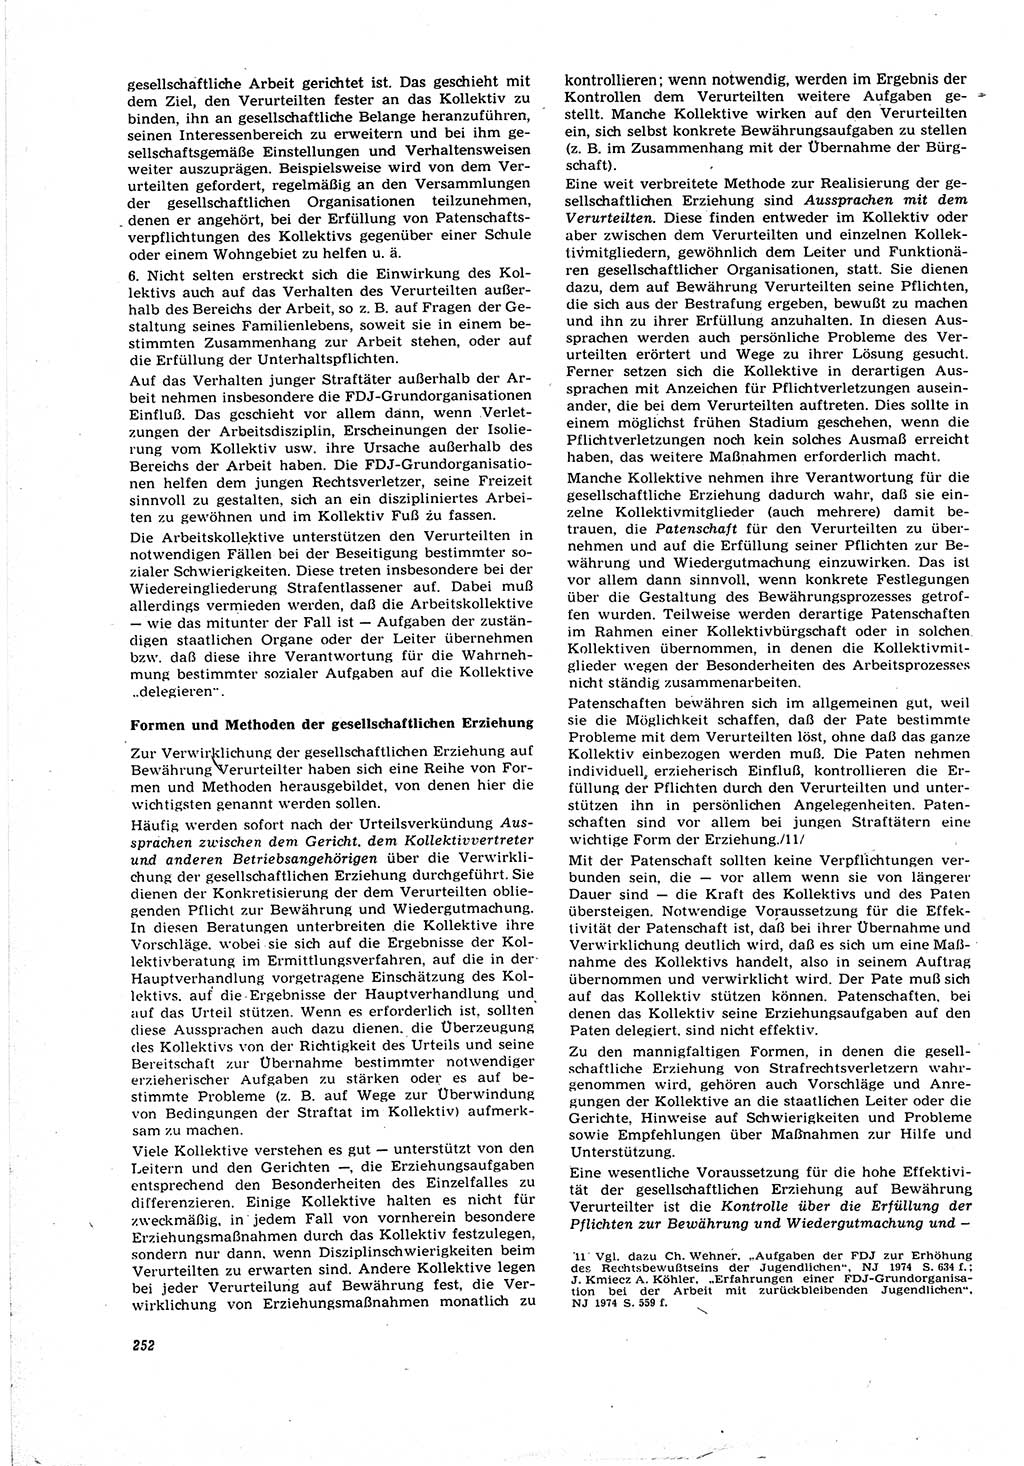 Neue Justiz (NJ), Zeitschrift für Recht und Rechtswissenschaft [Deutsche Demokratische Republik (DDR)], 30. Jahrgang 1976, Seite 252 (NJ DDR 1976, S. 252)